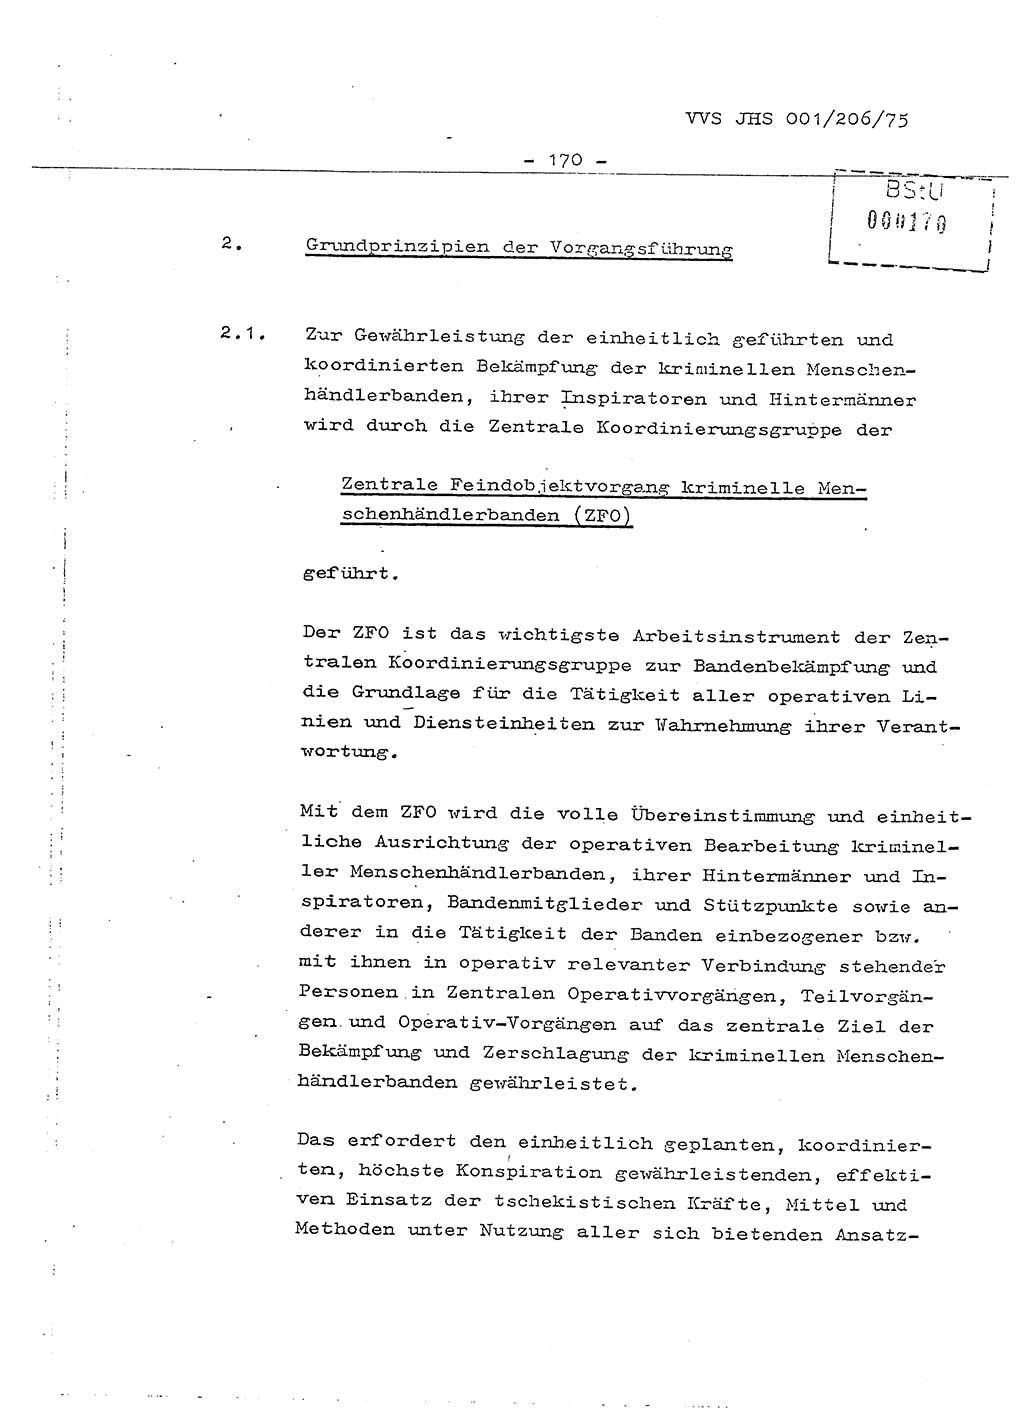 Dissertation Generalmajor Manfred Hummitzsch (Leiter der BV Leipzig), Generalmajor Heinz Fiedler (HA Ⅵ), Oberst Rolf Fister (HA Ⅸ), Ministerium für Staatssicherheit (MfS) [Deutsche Demokratische Republik (DDR)], Juristische Hochschule (JHS), Vertrauliche Verschlußsache (VVS) 001-206/75, Potsdam 1975, Seite 170 (Diss. MfS DDR JHS VVS 001-206/75 1975, S. 170)